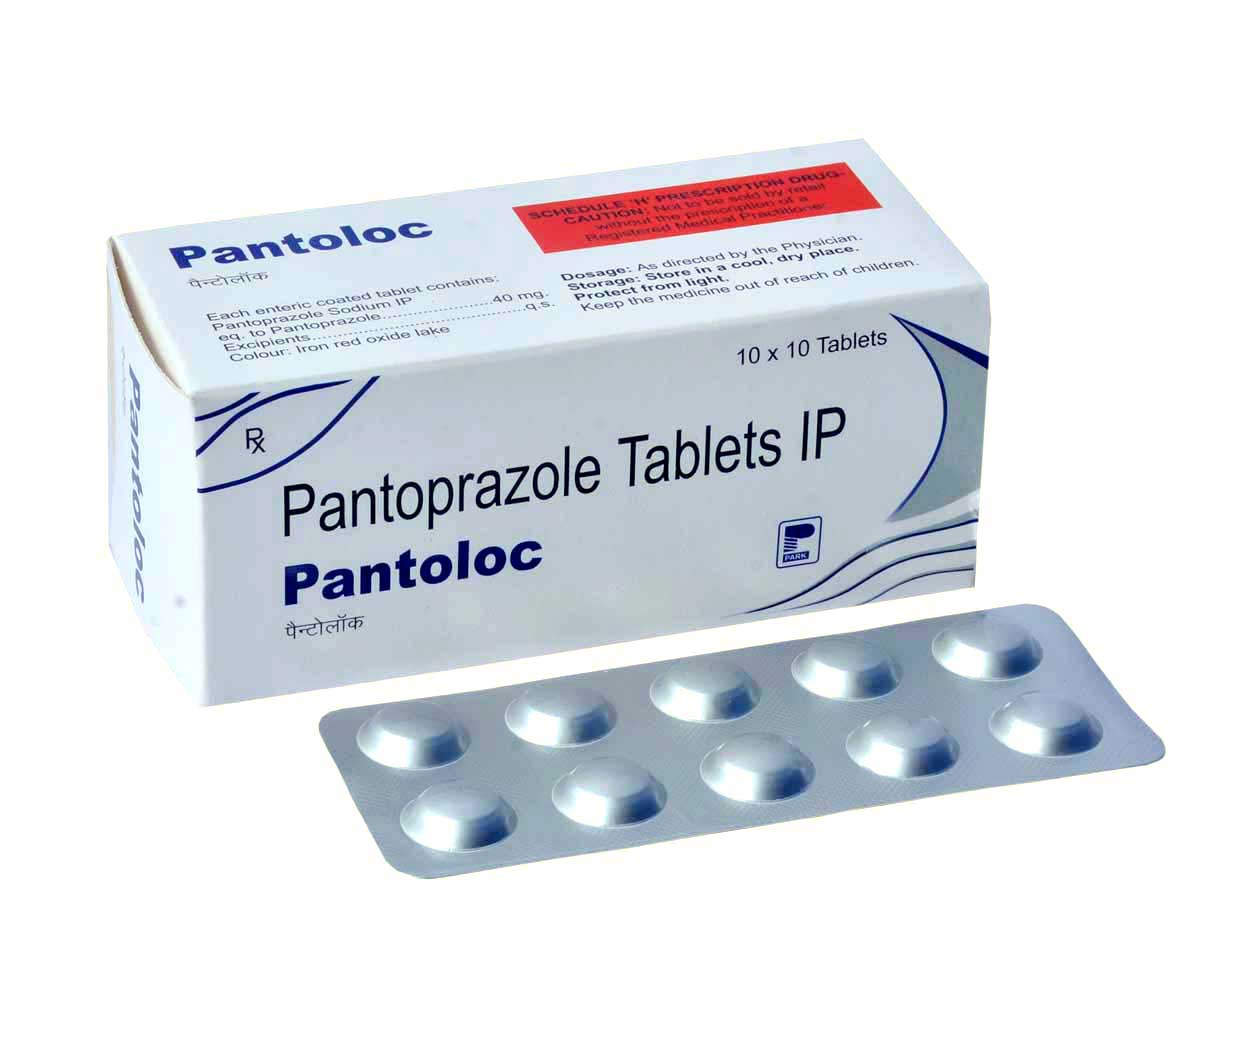 Product Name: Pantoloc, Compositions of Pantoloc are Pantoprazole Tablets IP - Park Pharmaceuticals